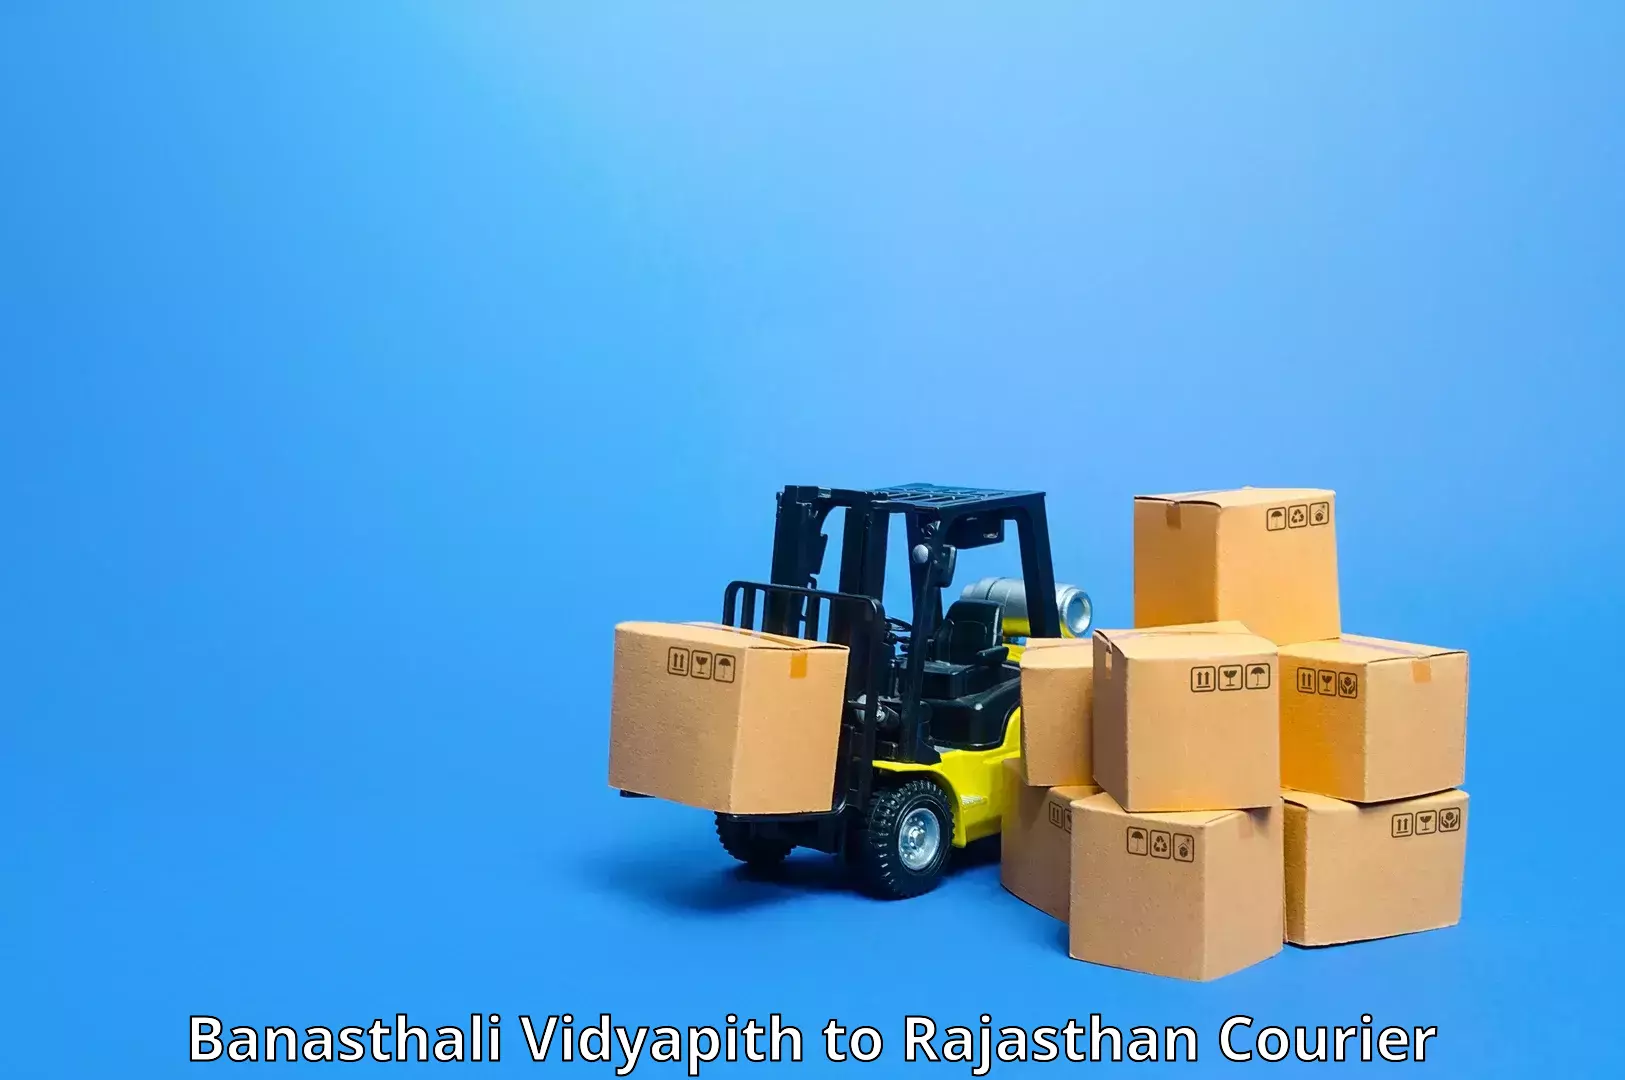 Express package handling Banasthali Vidyapith to Rajasthan